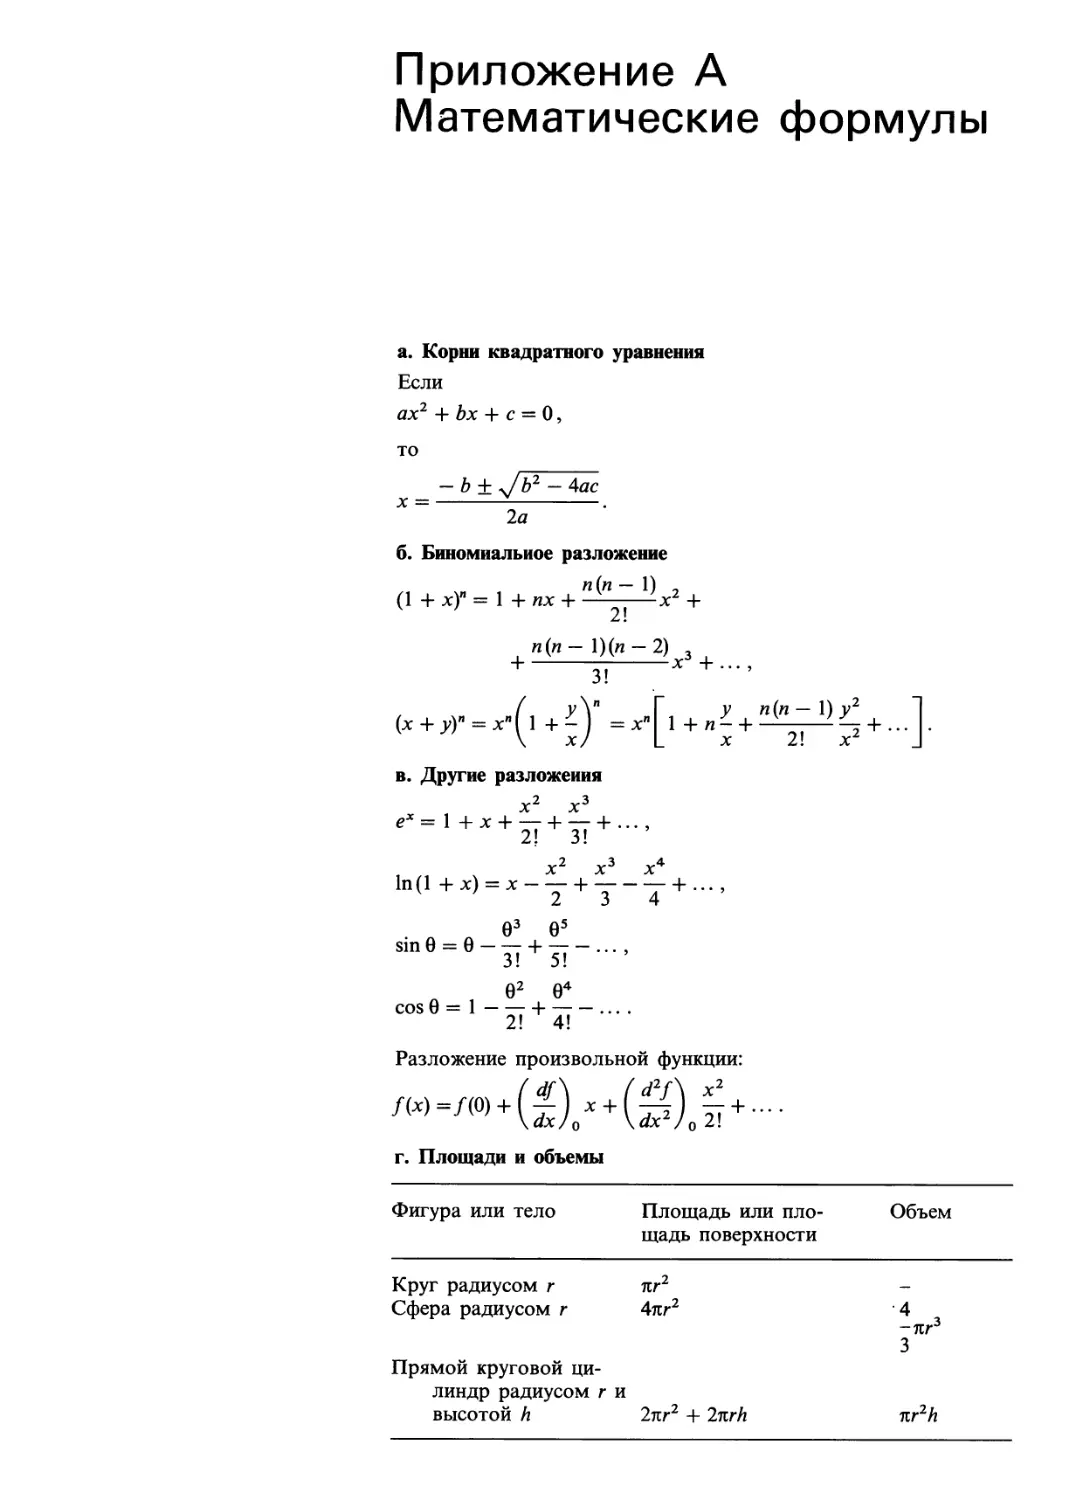 Приложение А. Математические формулы